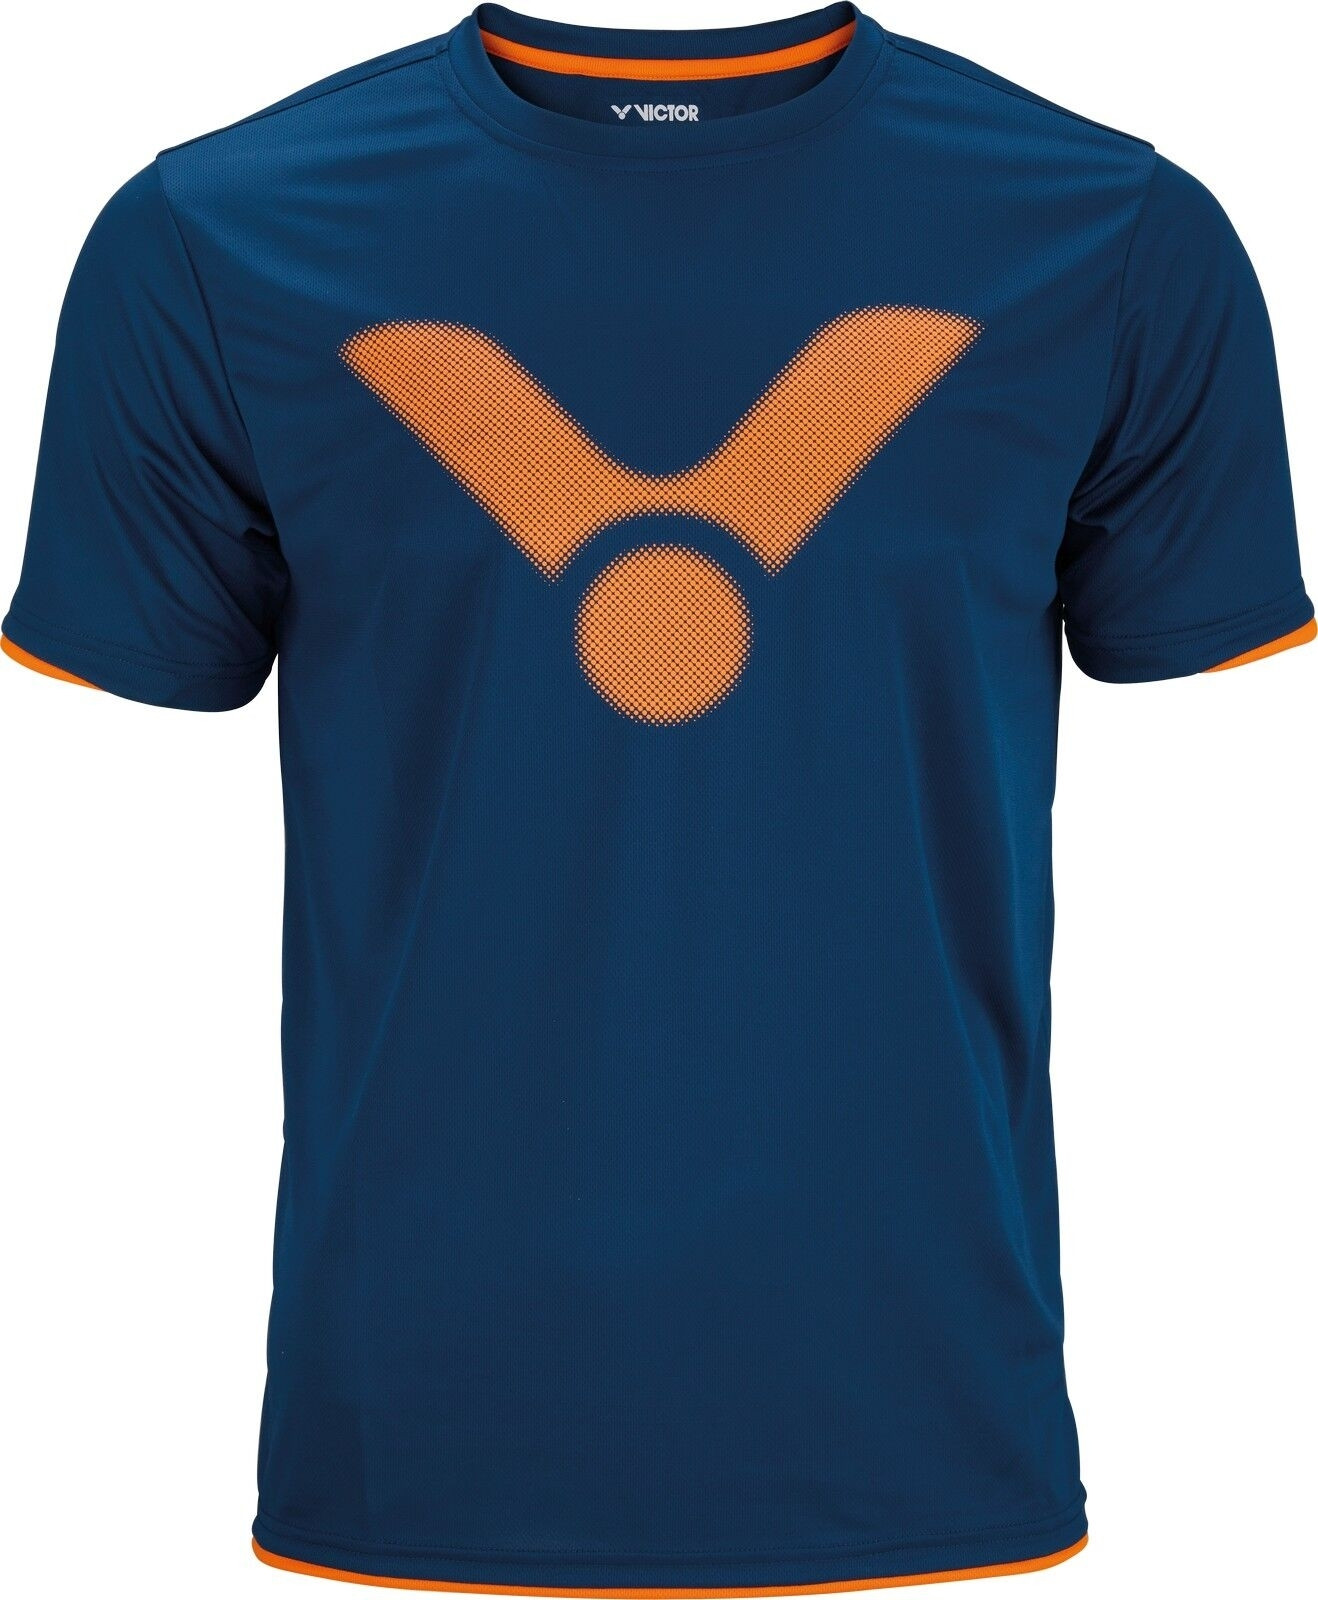 VICTOR T-Shirt T-03100 B Unisex für Badminton Squash Tennis Tischtennis 